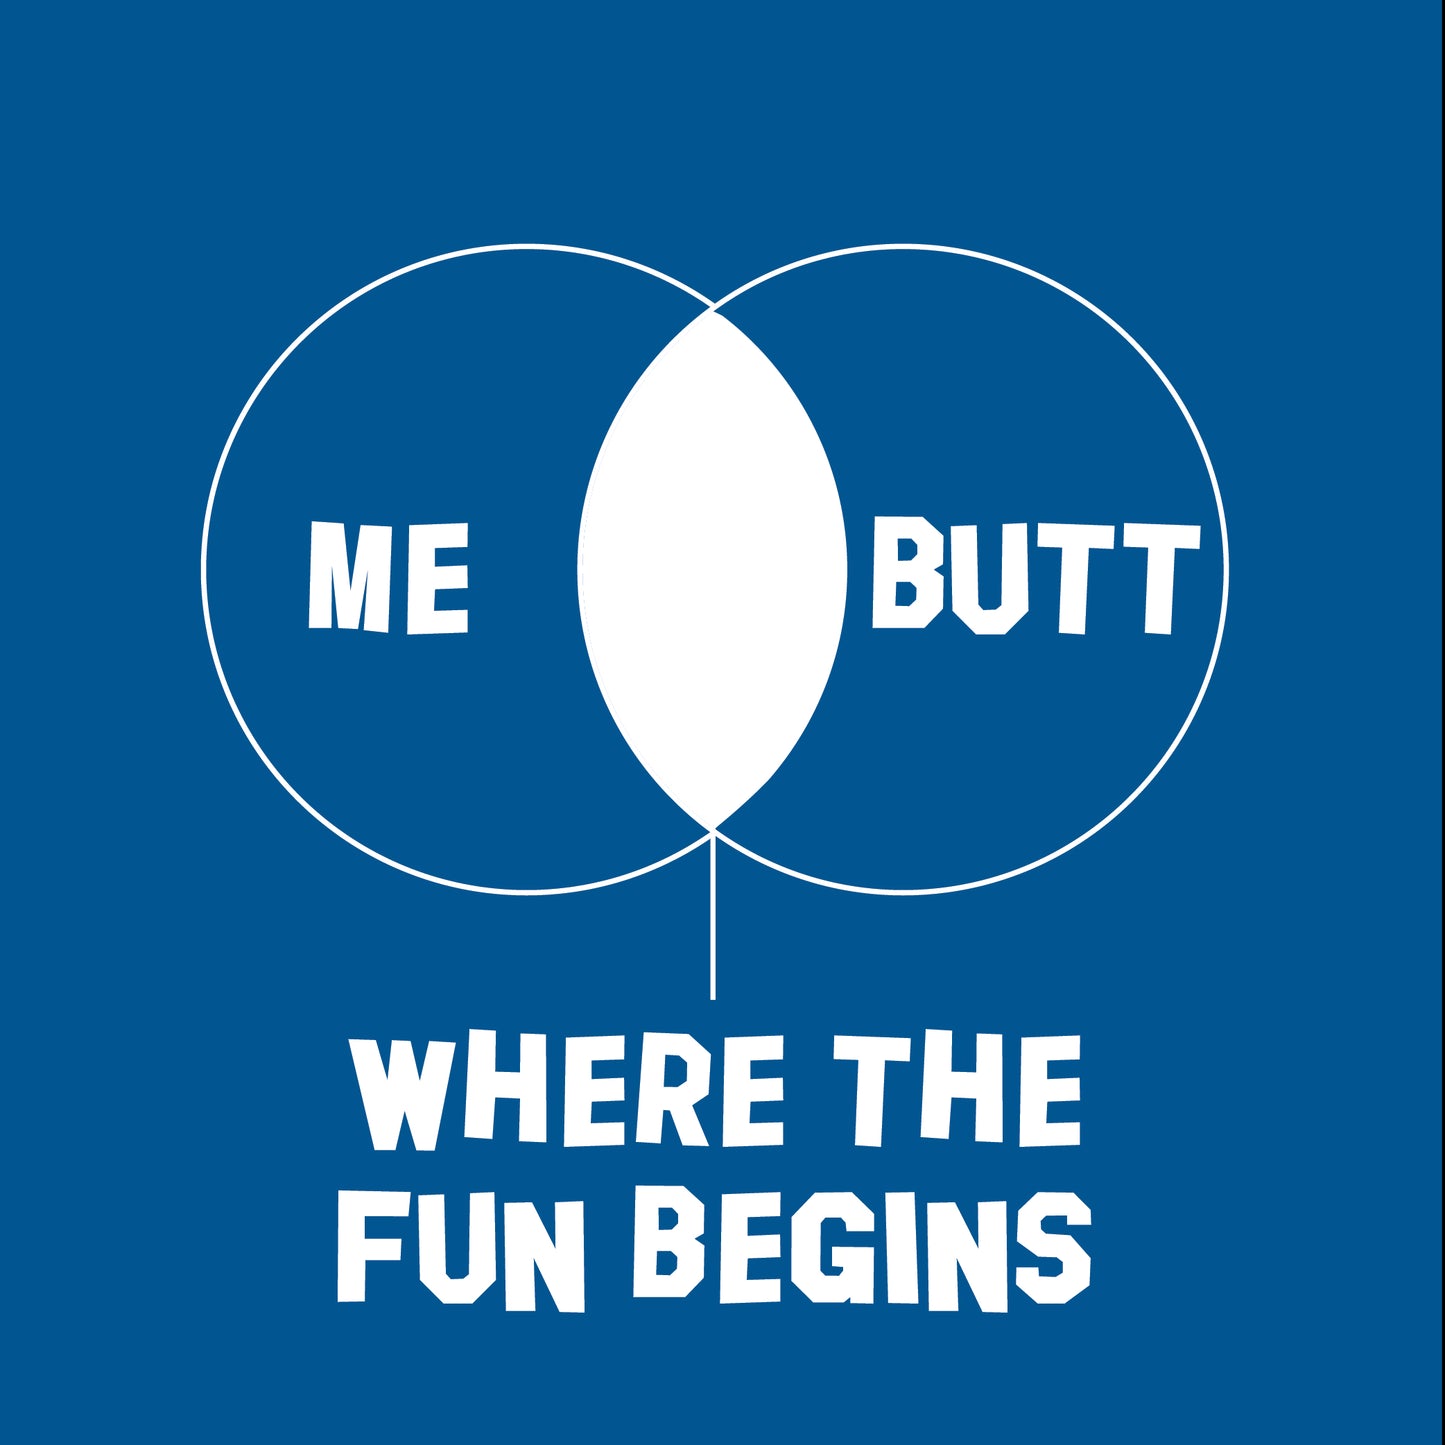 Me Butt where the fun begins